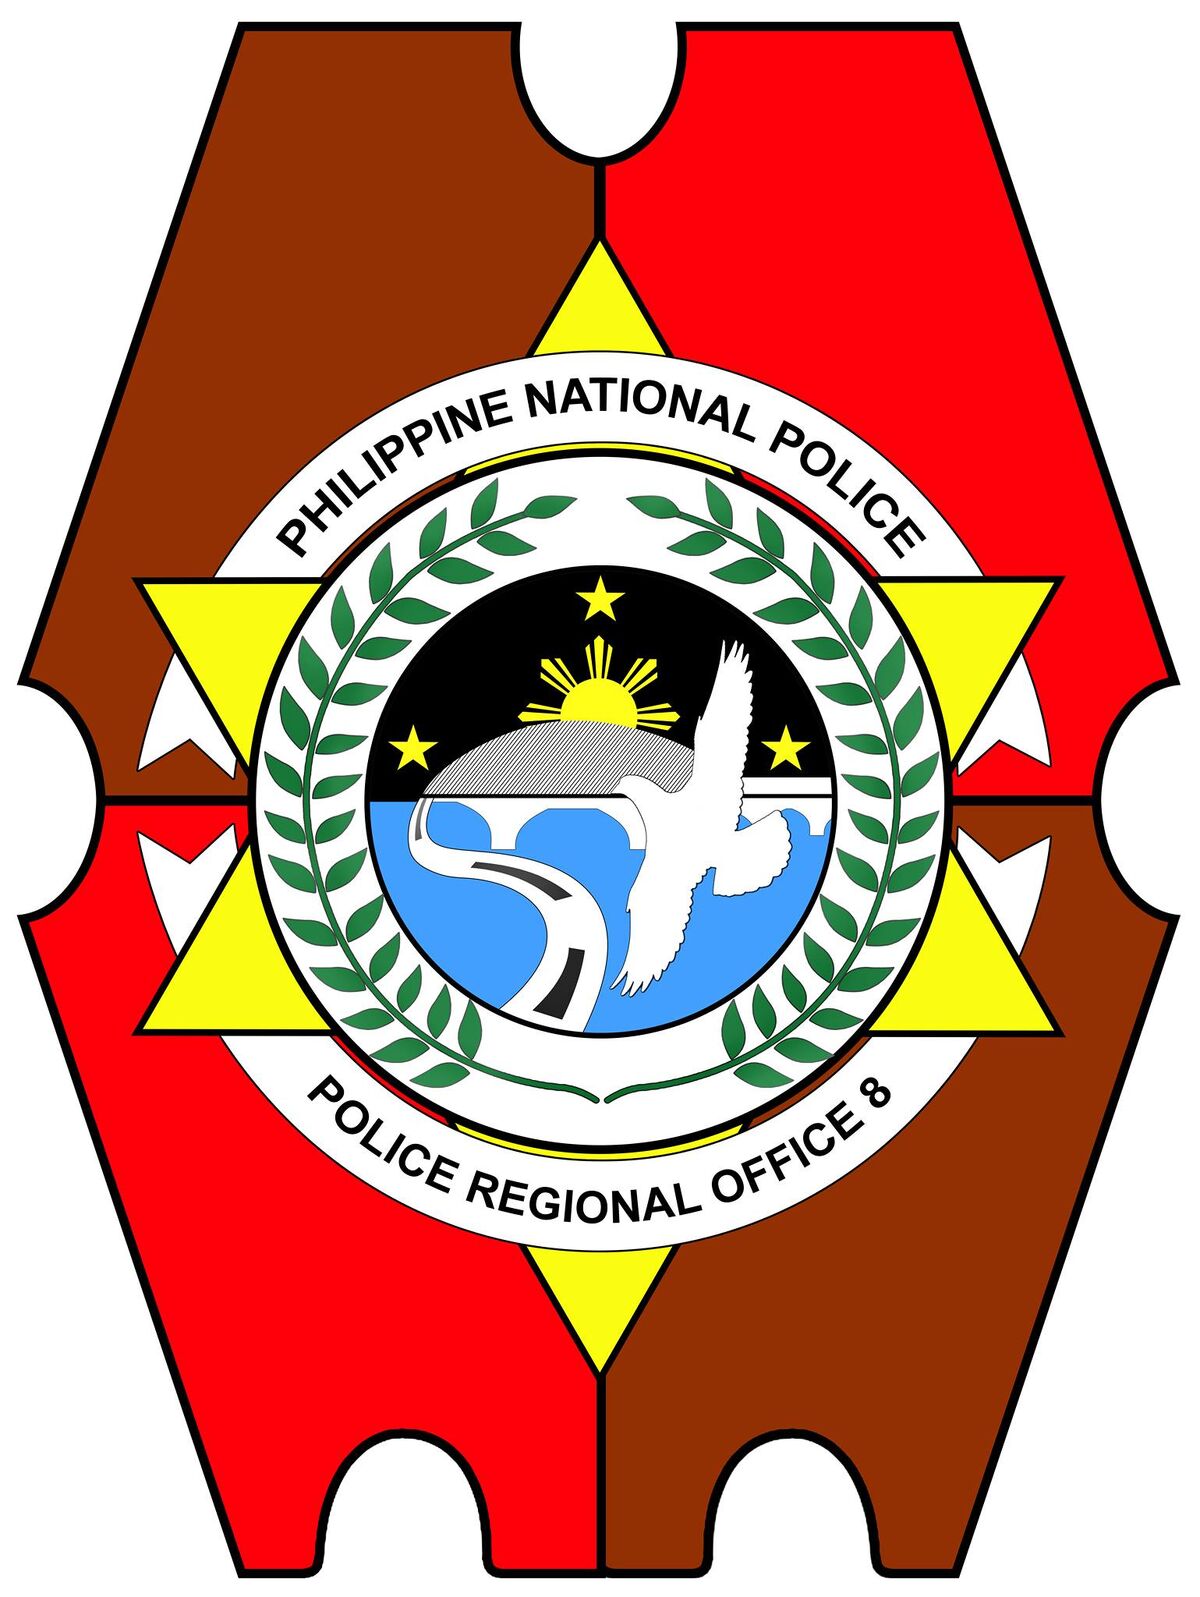 Police Regional Office 8 | Philippine Television Wiki | Fandom